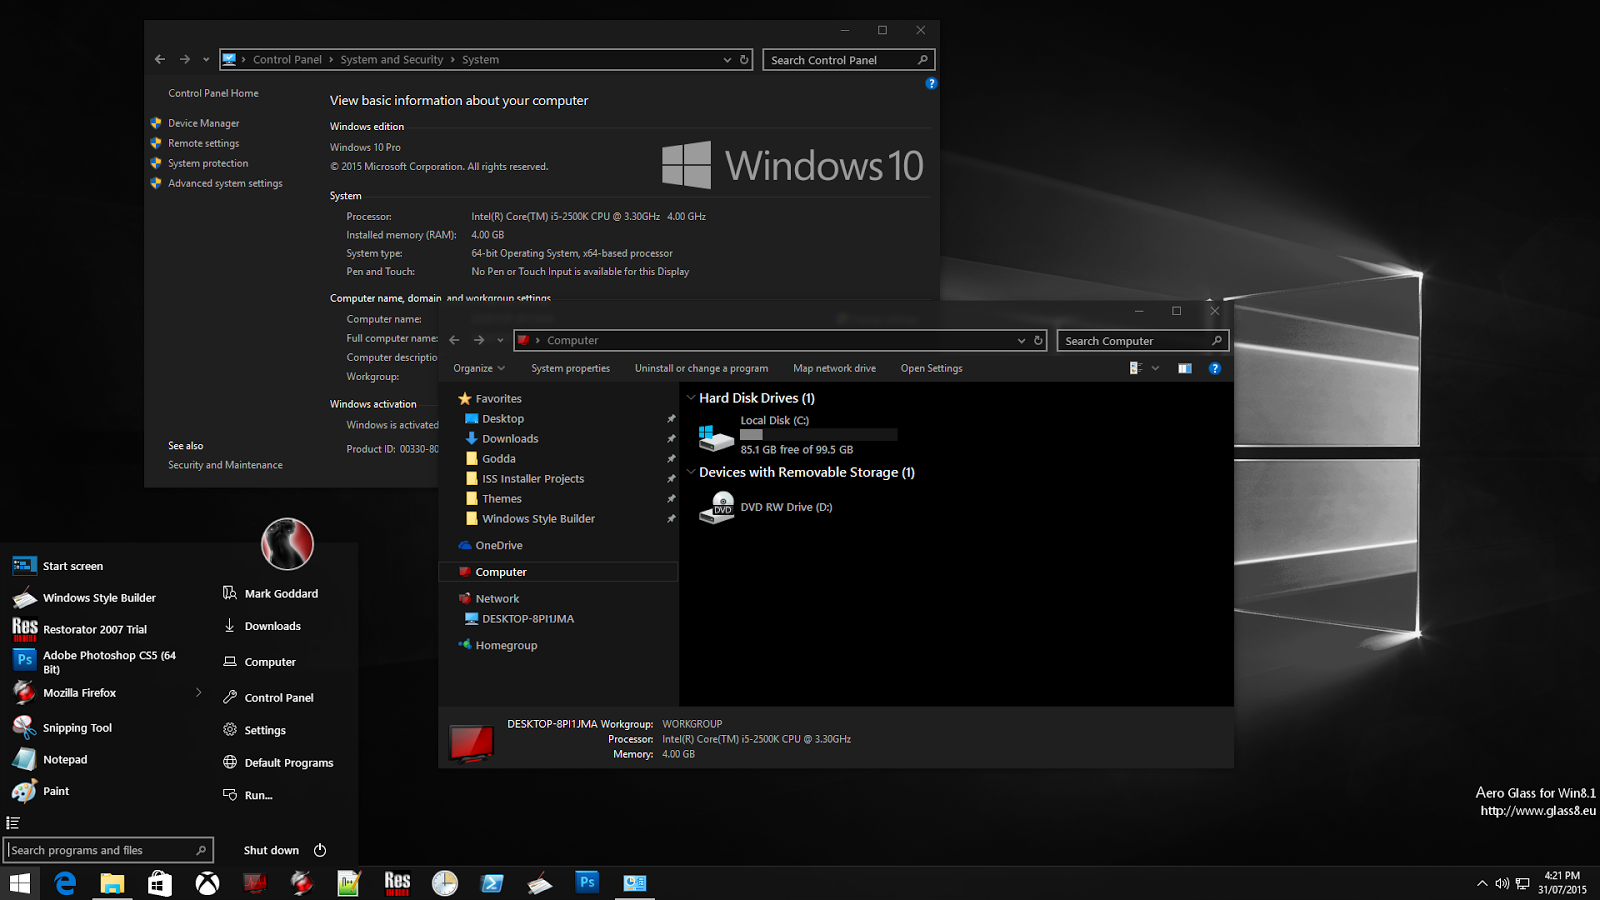 Windows 7 Alienware 2010 - X64 Iso Torrent